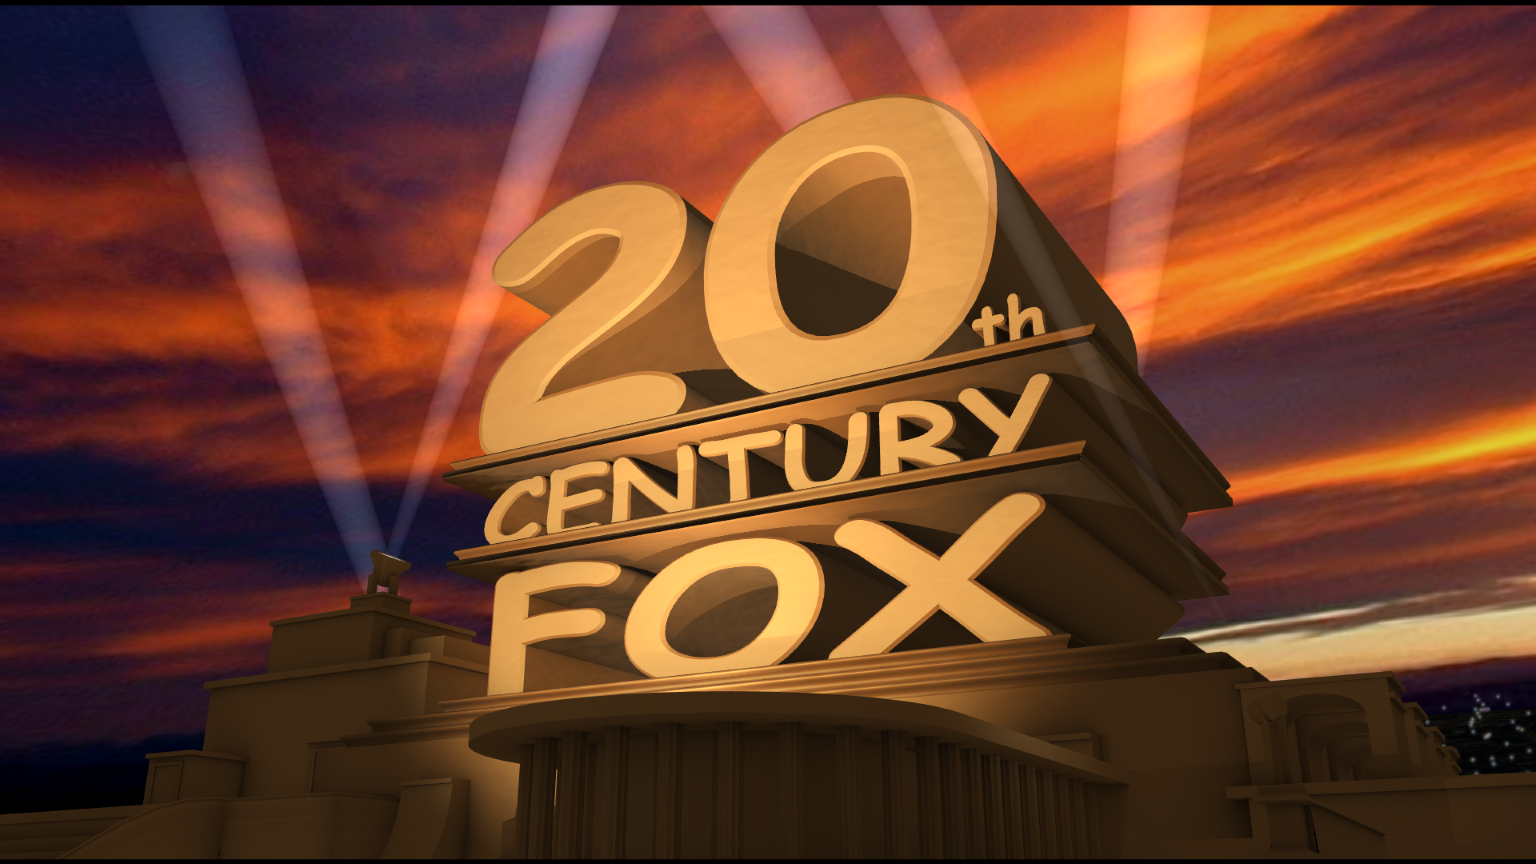 Двадцатилетие pax. Киностудия двадцатый век Фокс. Интро в стиле 20th Century Fox. 20 Лет выпуска. Встреча выпускников 20 лет.